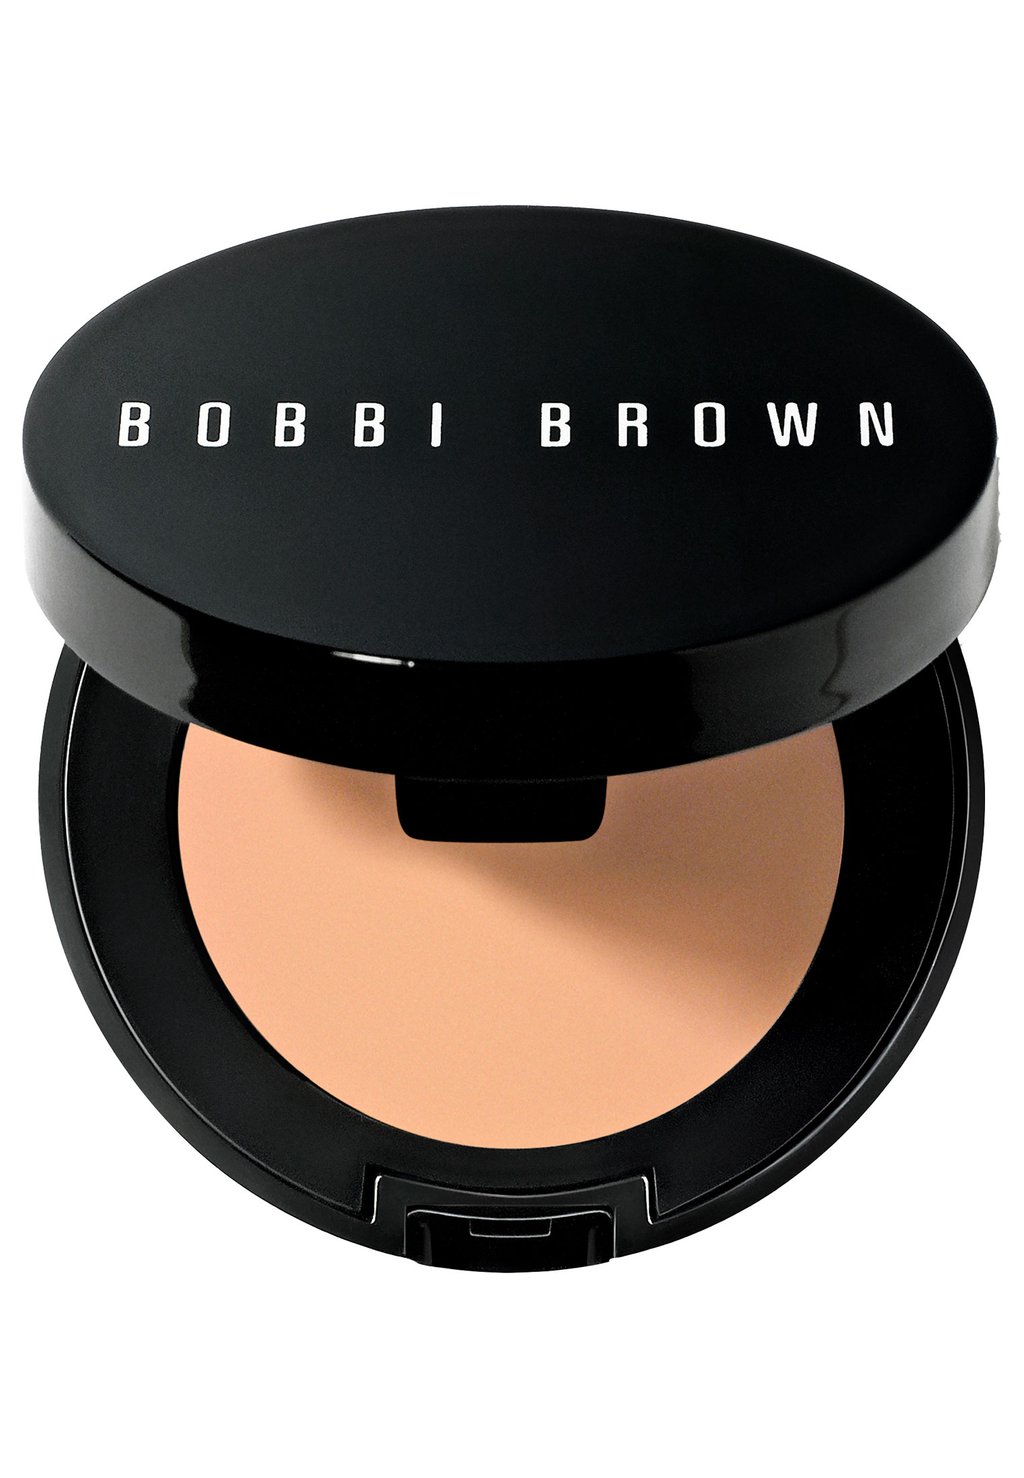 Консилер Corrector Bobbi Brown, цвет porcelain peach консилер corrector bobbi brown цвет light bisque